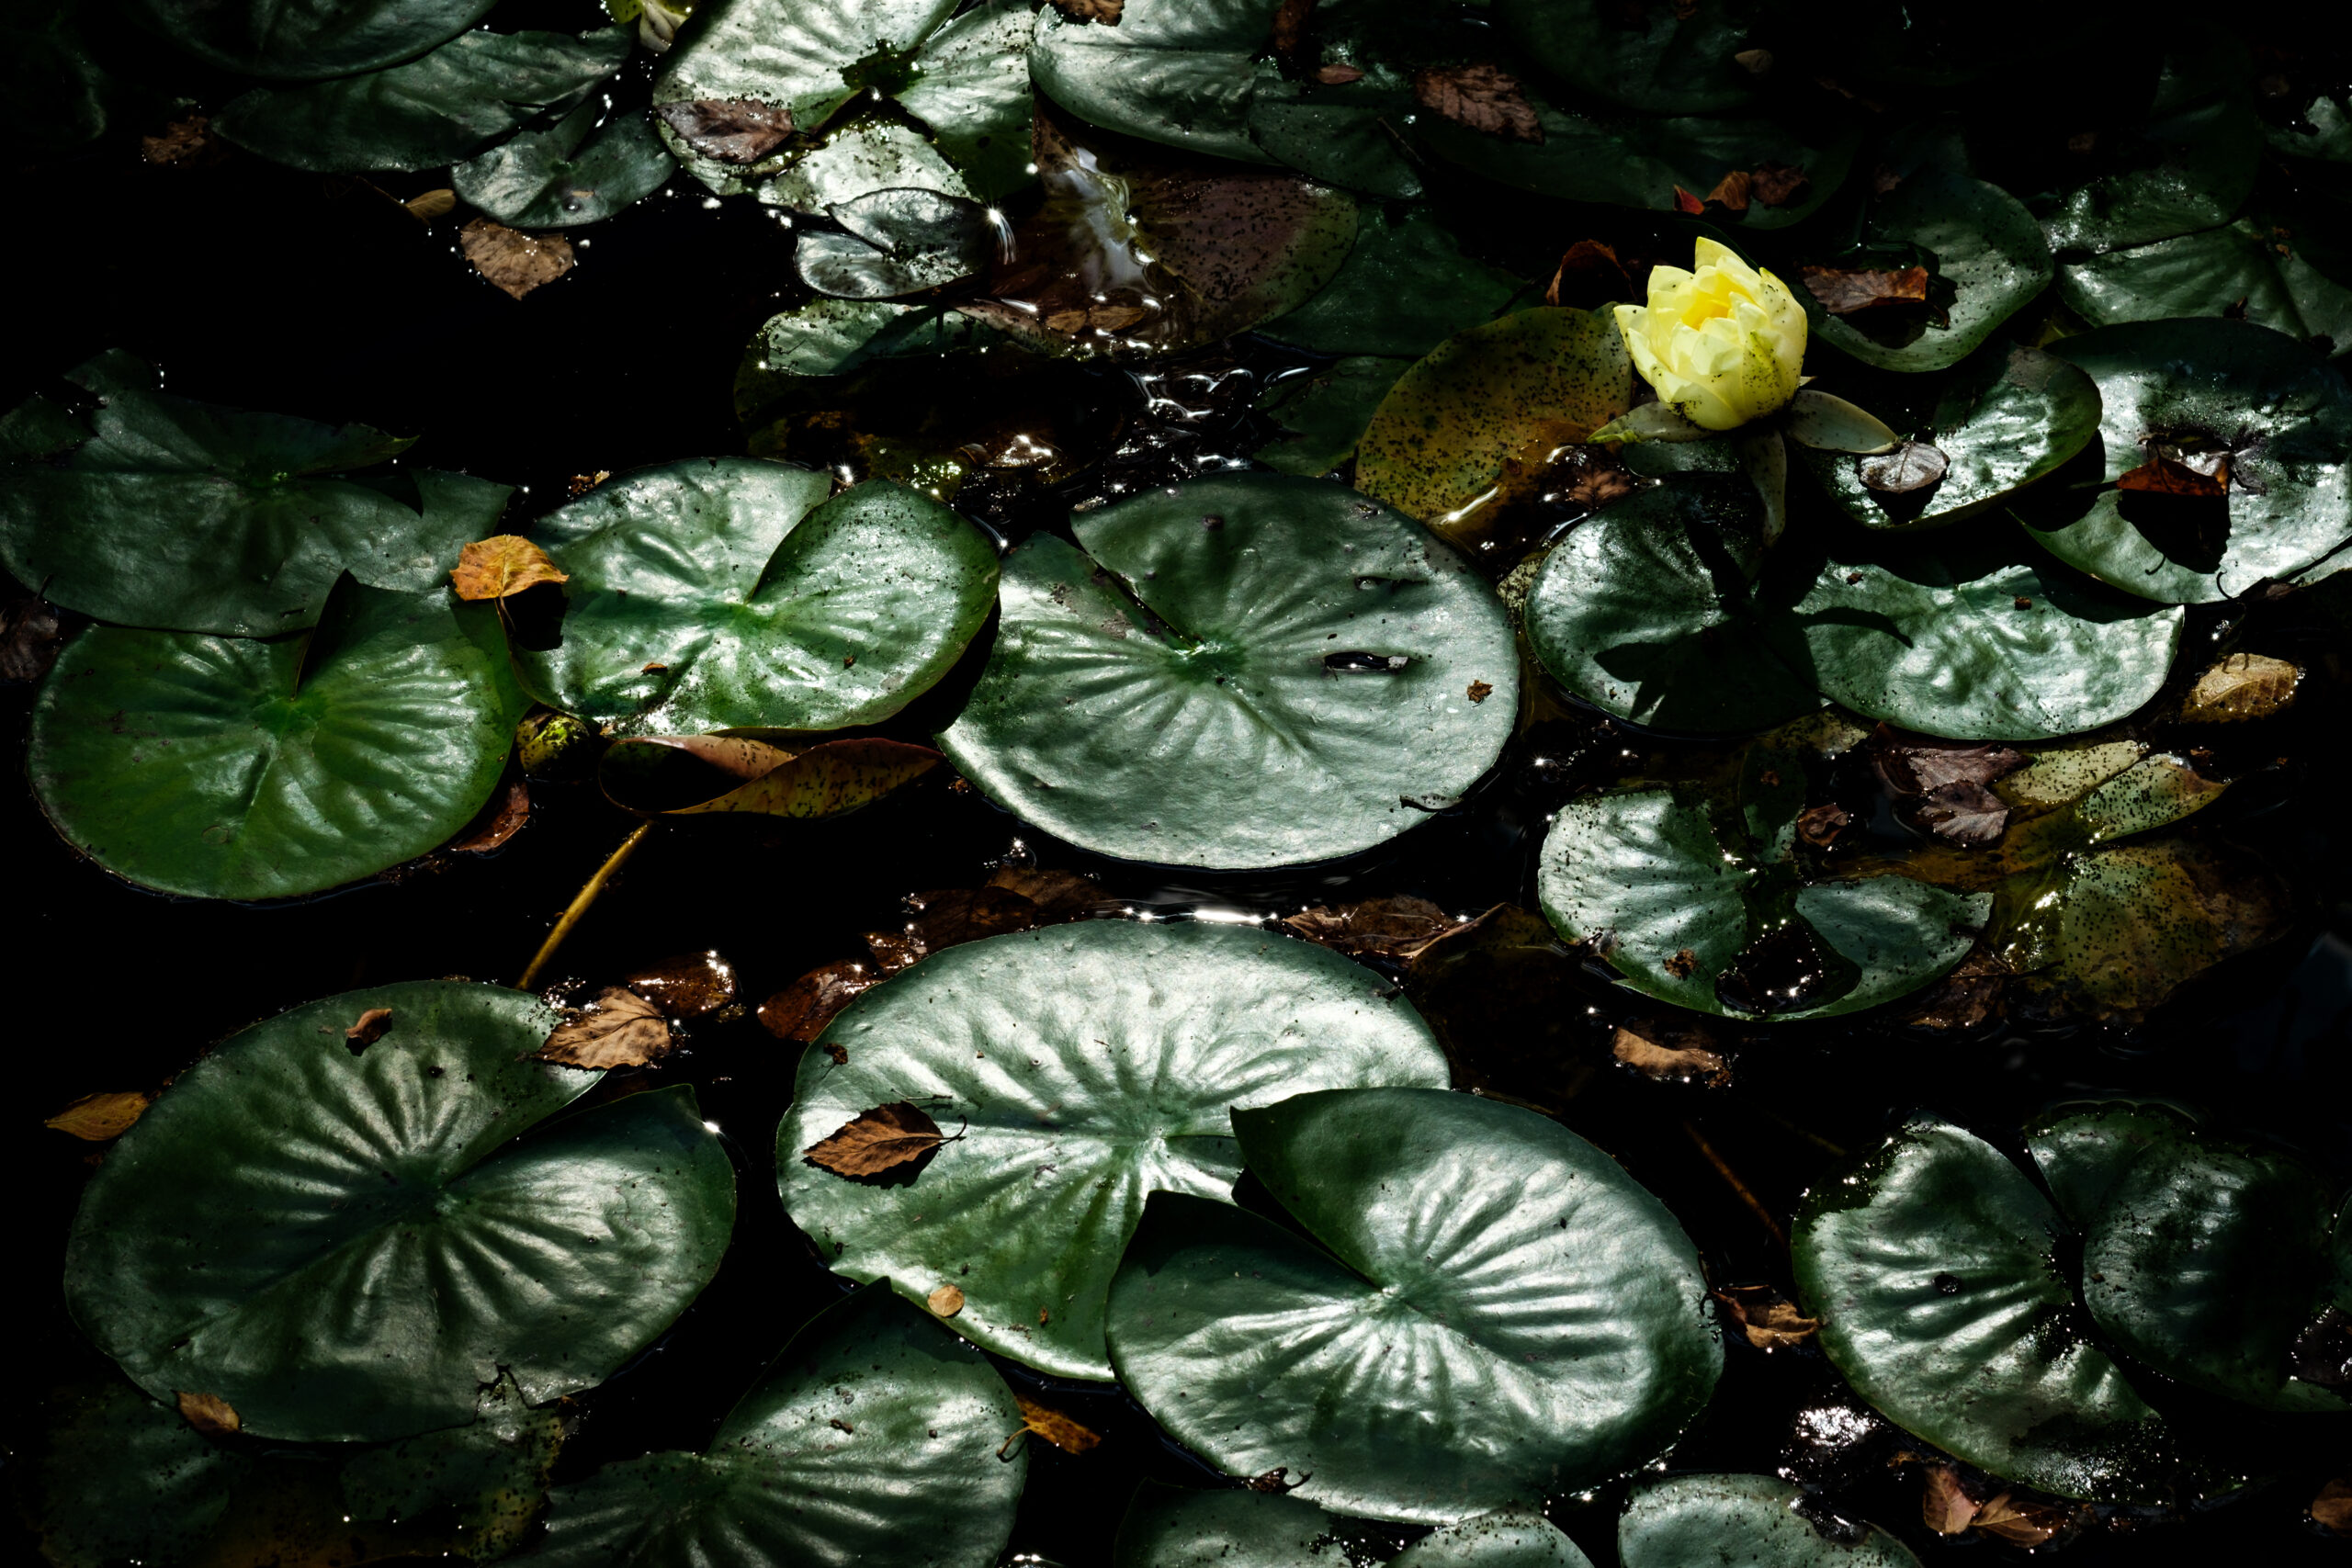 Lilypads on a pond.